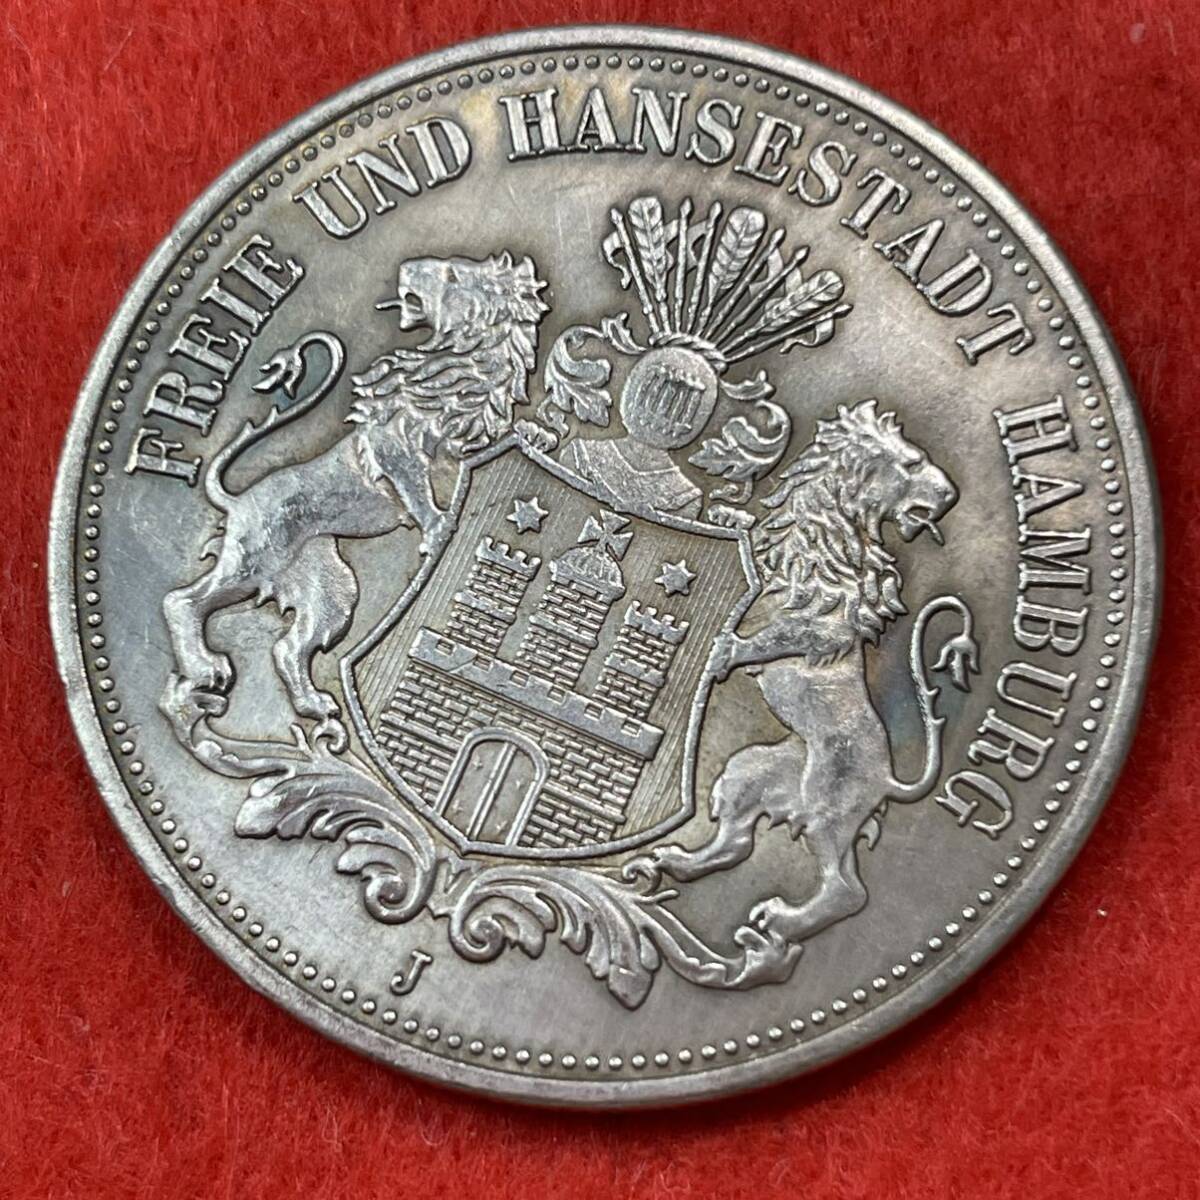 ドイツ 硬貨 古銭 ハンブルク州 1896年 ハンブルク州紋章 キャット・キャッスル マルク 国章 双頭の鷲 コイン 重20.48g 銀貨 _画像1